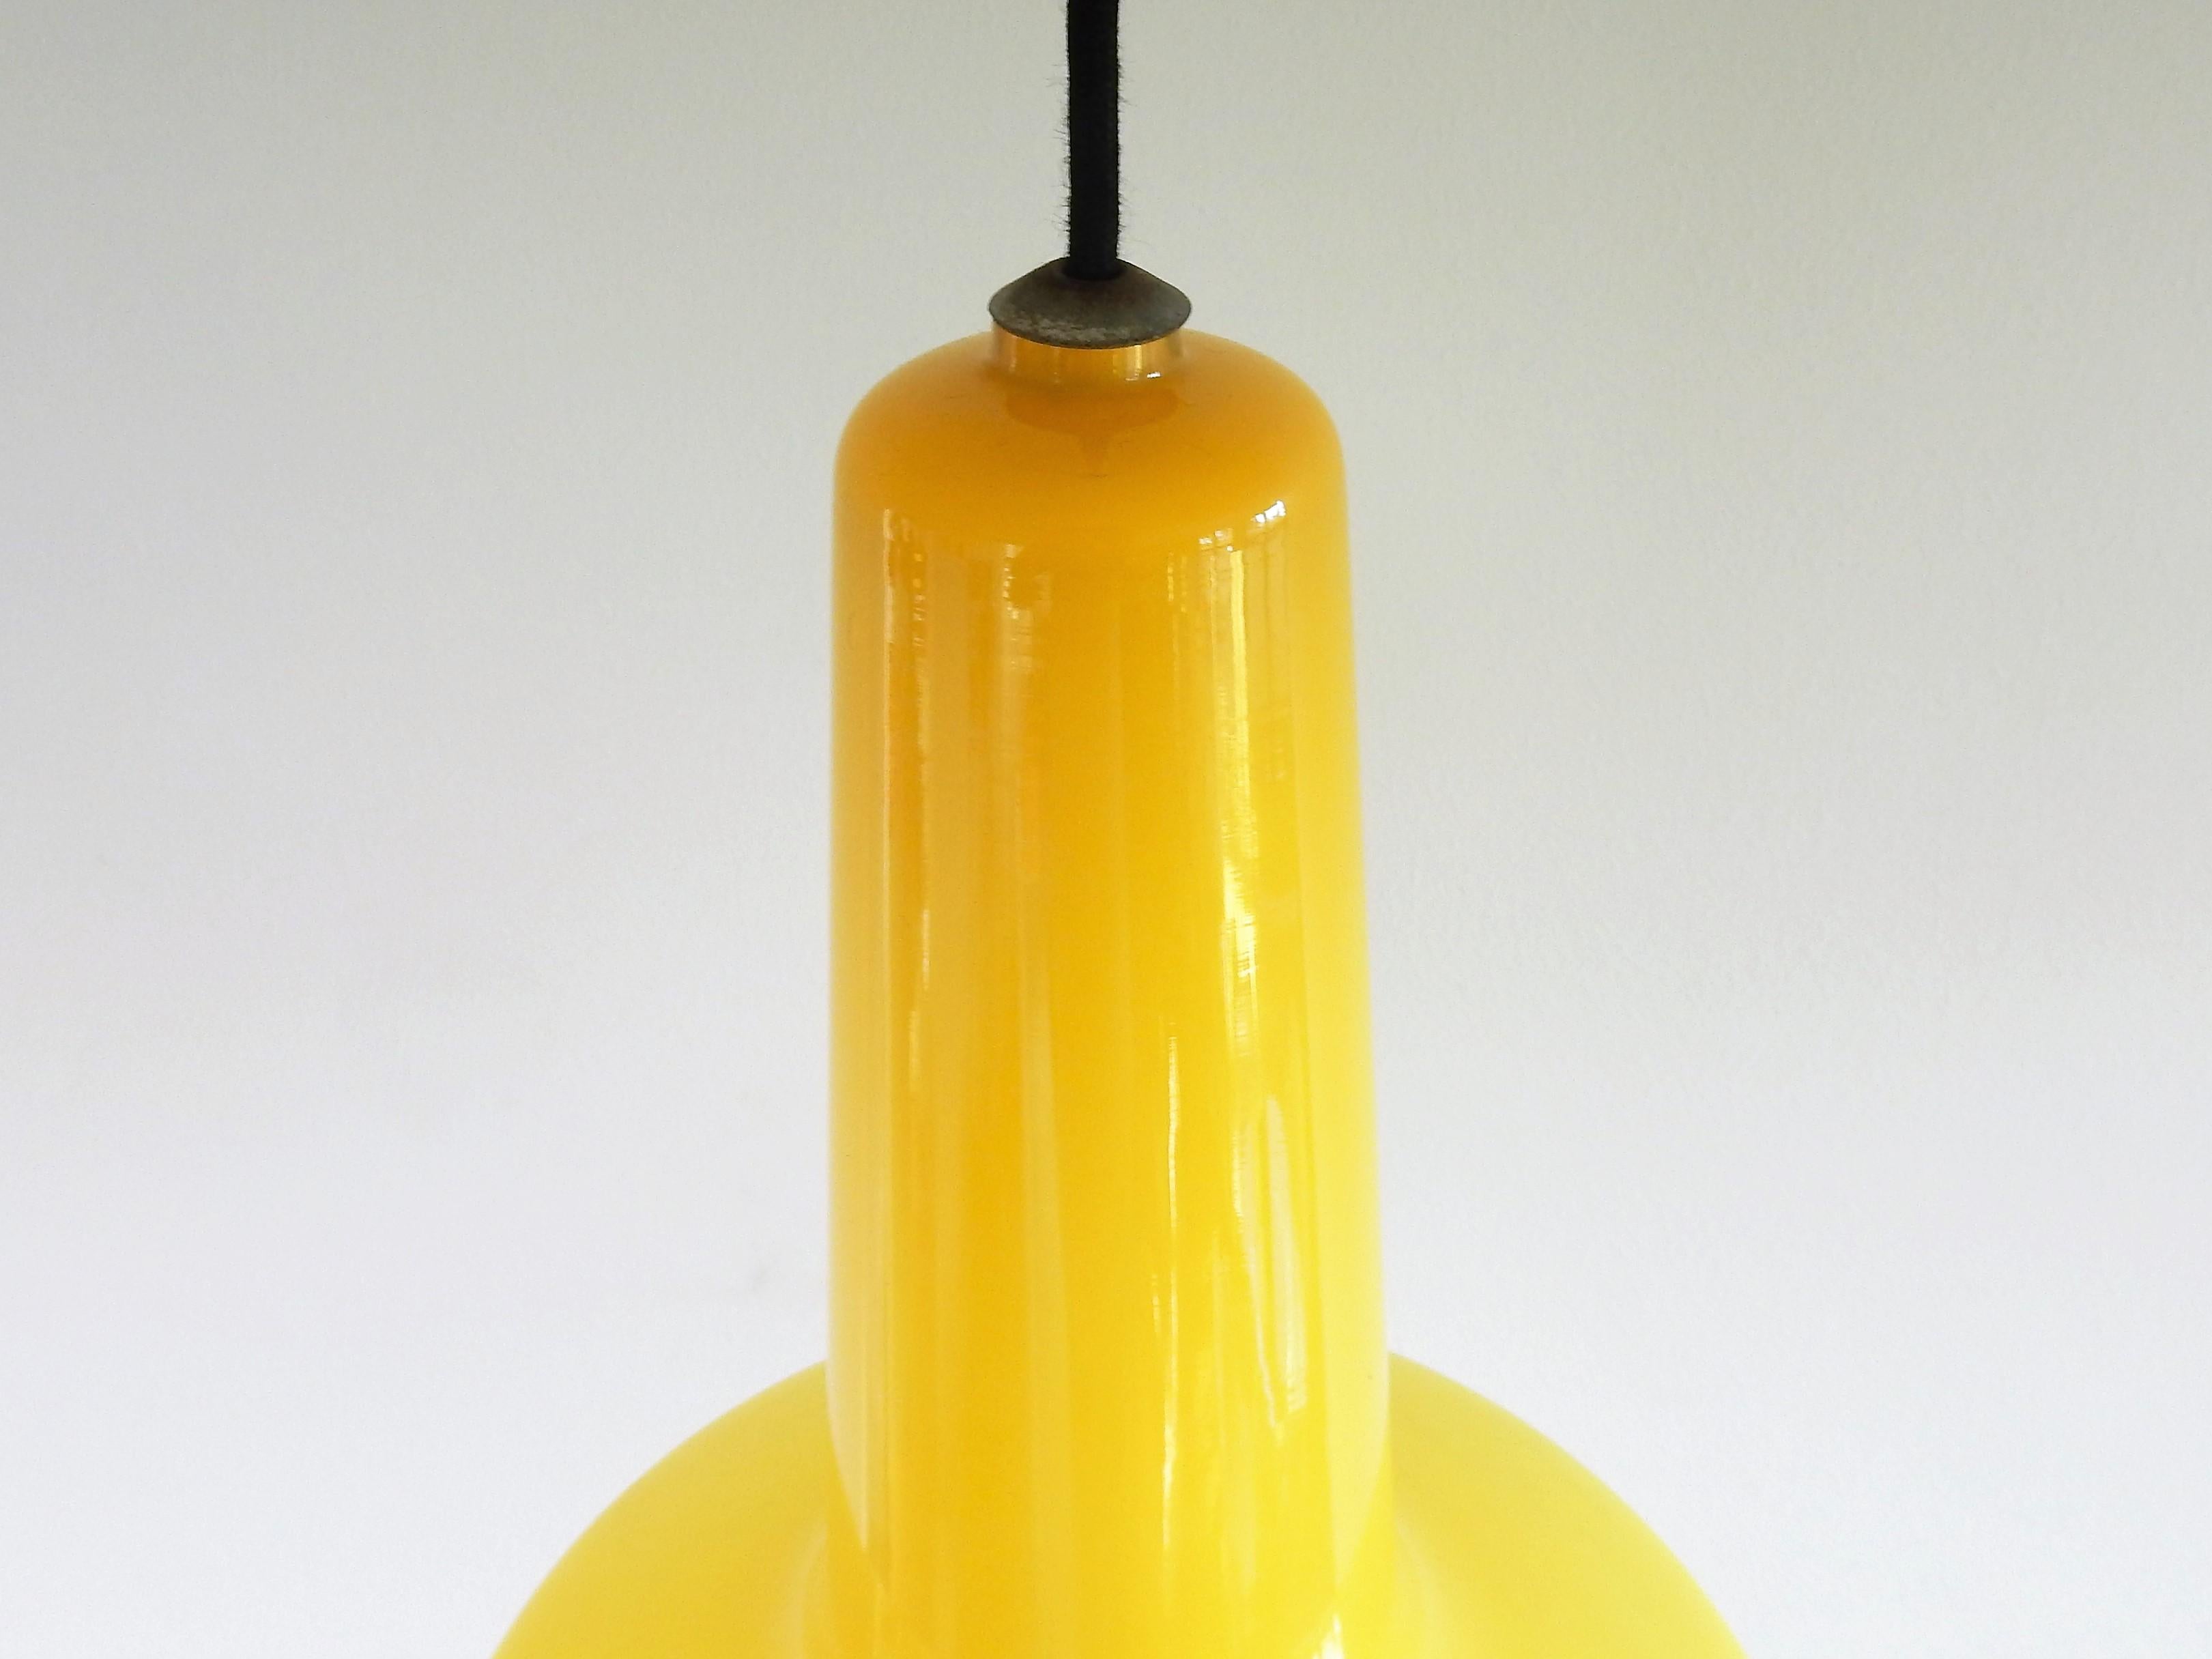 Danish Yellow 'Kreta' pendant lamp by Jacob Eiler Bang for Fog & Mørup, Denmark, 1960s